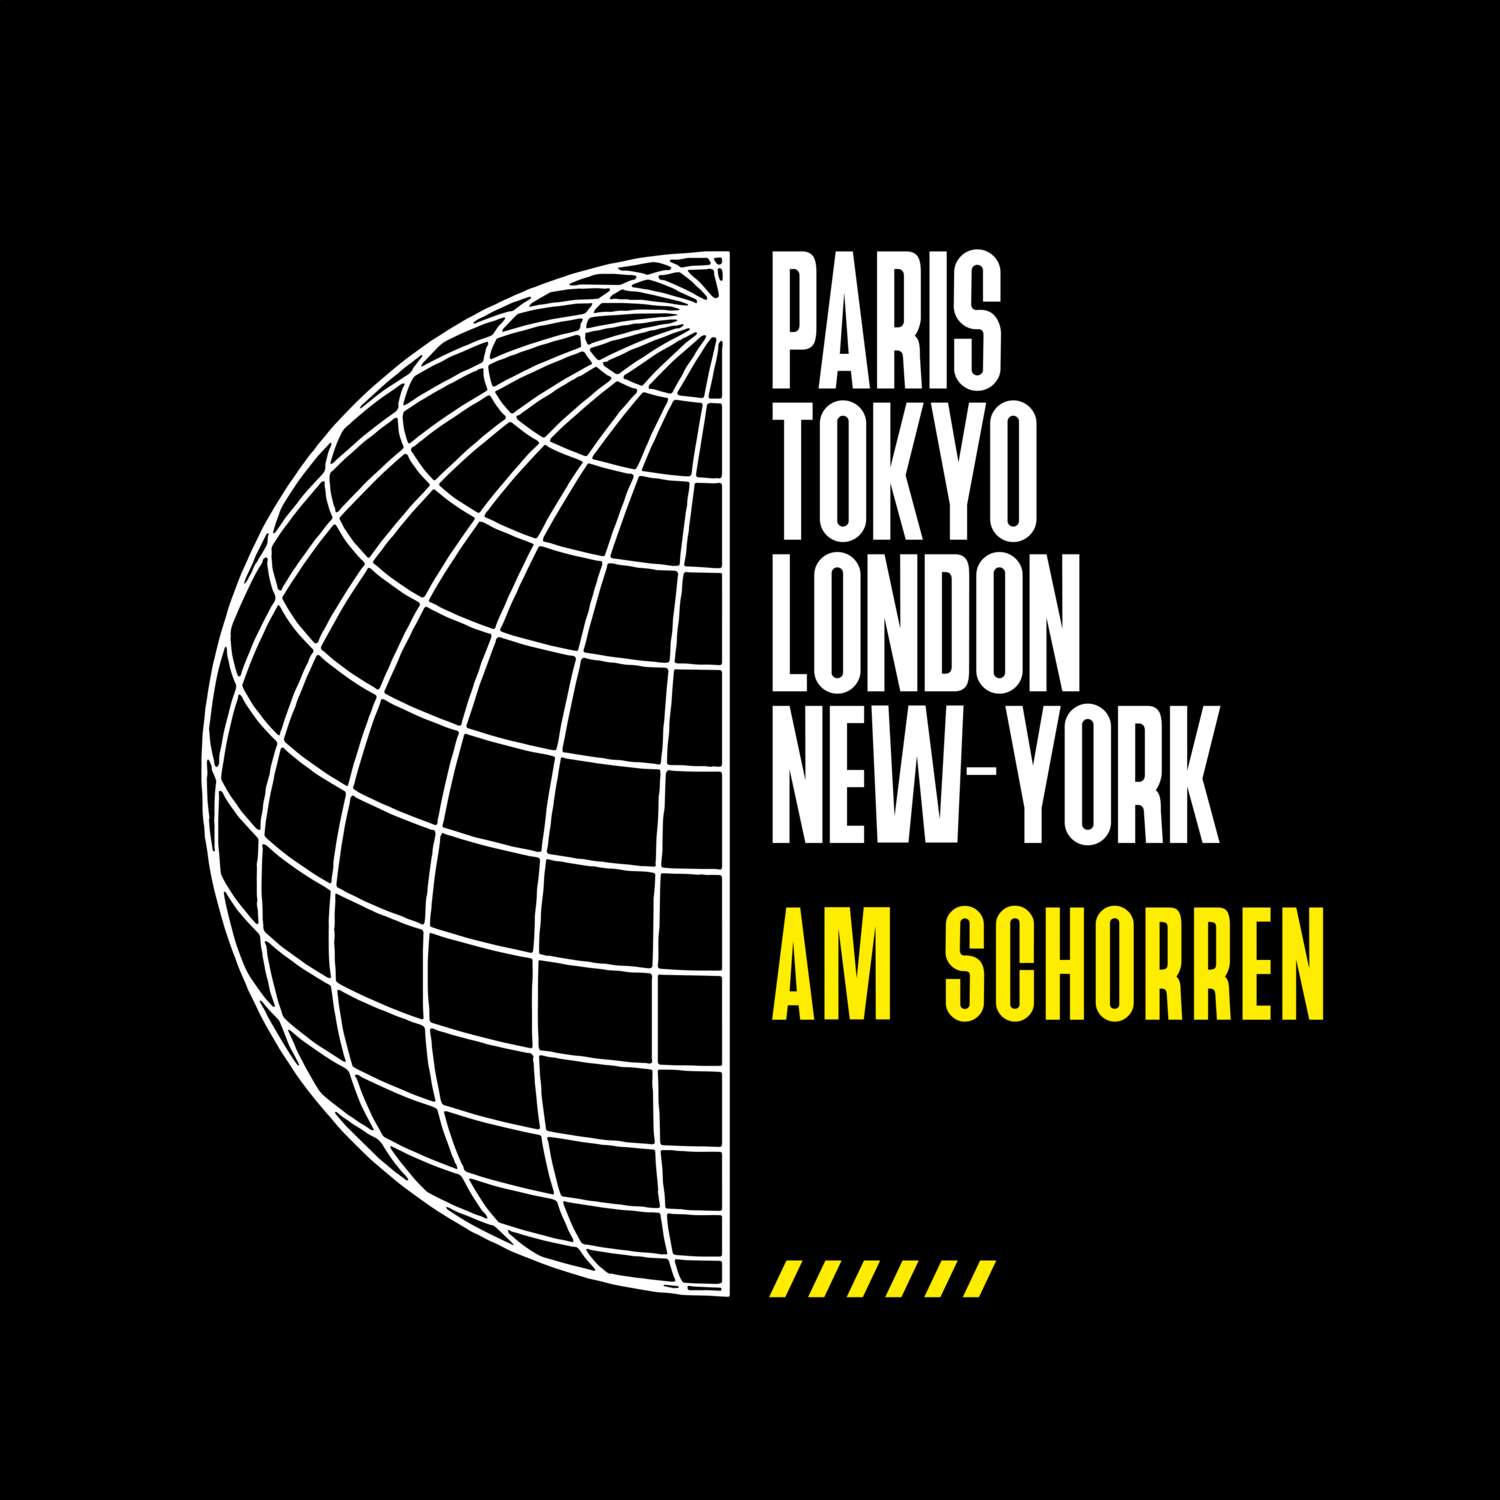 Am Schorren T-Shirt »Paris Tokyo London«